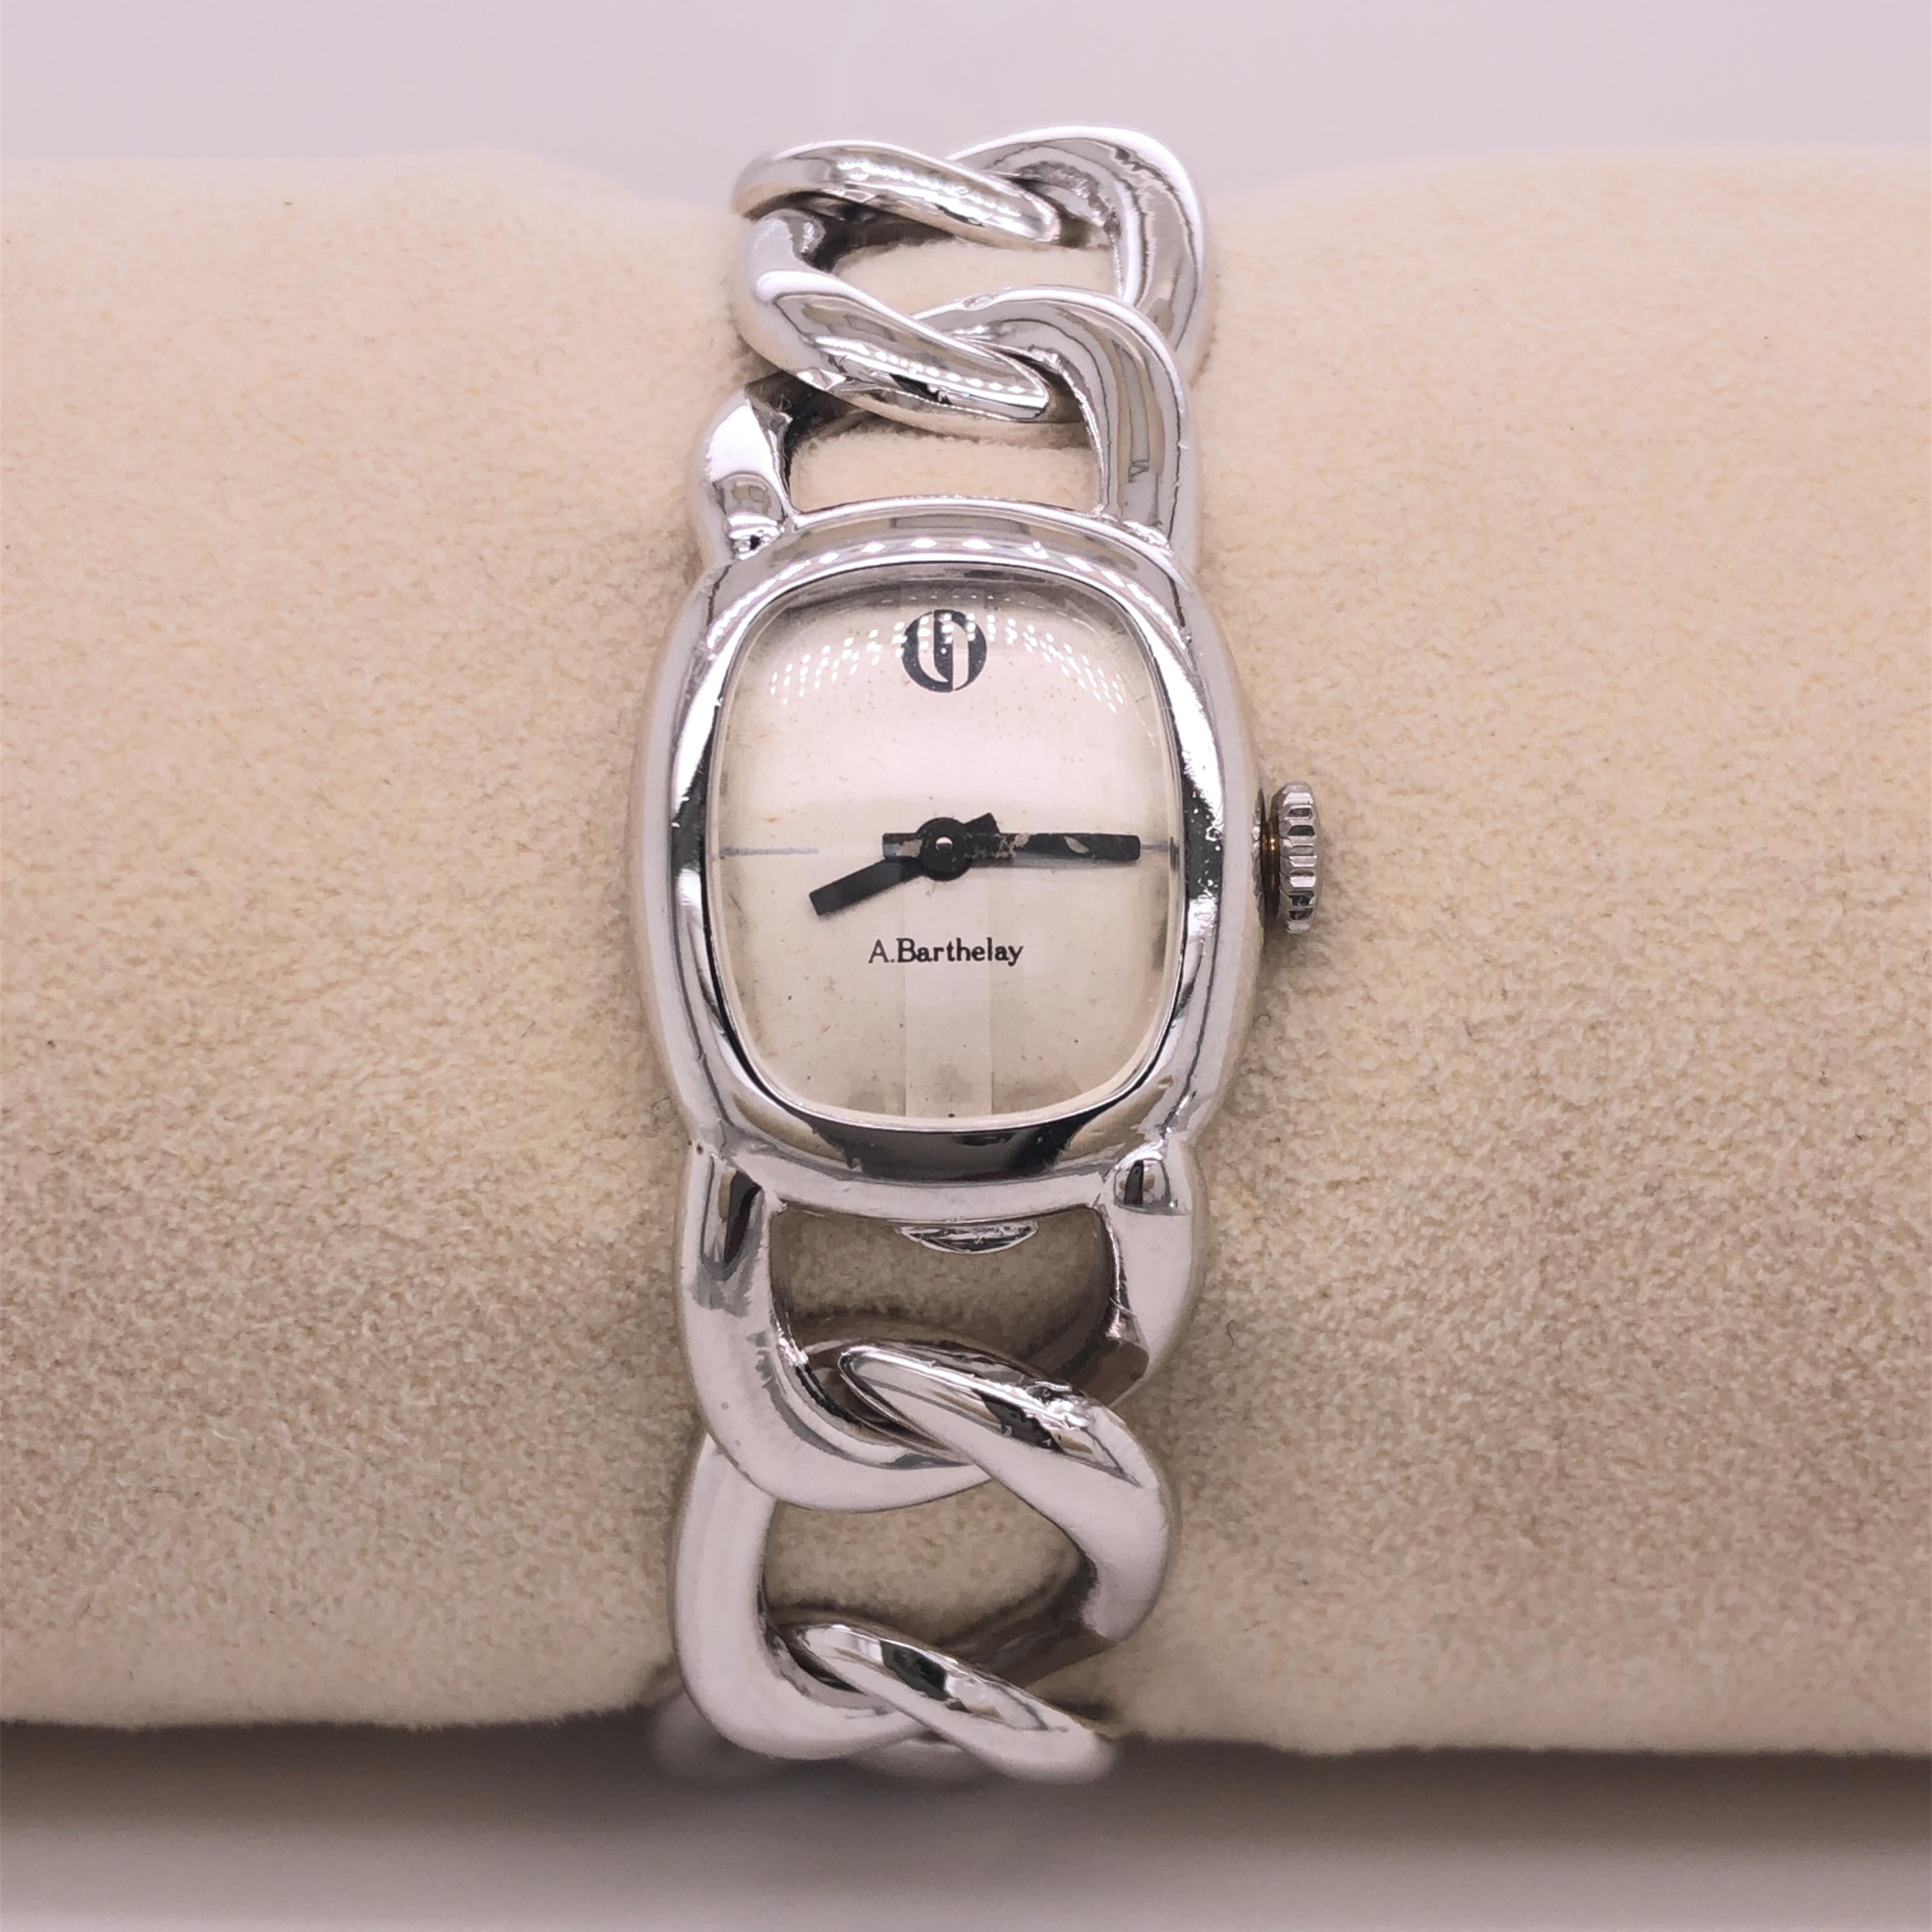 Original 1970's, Exquisite Alexis Barthelay Armbanduhr, ein ikonisches Stück, das sich durch ein elegantes, einzigartiges, absolut schickes und dennoch zeitloses Design auszeichnet, Uhrengehäuse und Kettenarmband sind handgeschweißt: dieses Stück